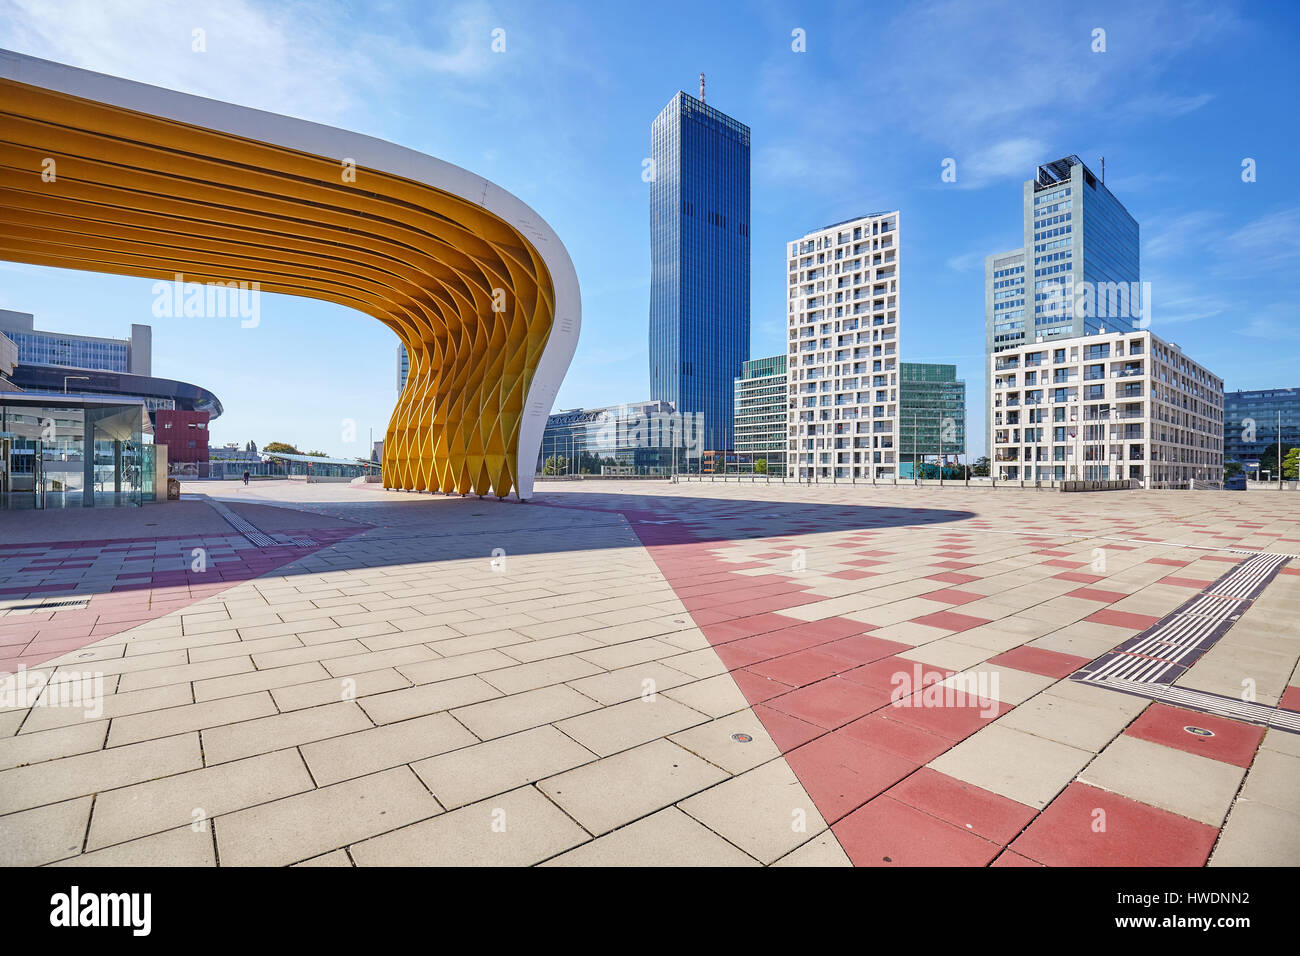 Vienne, Autriche - Août 14, 2016 : l'architecture moderne de Vienna Donau complexe sur une belle journée d'été. Banque D'Images